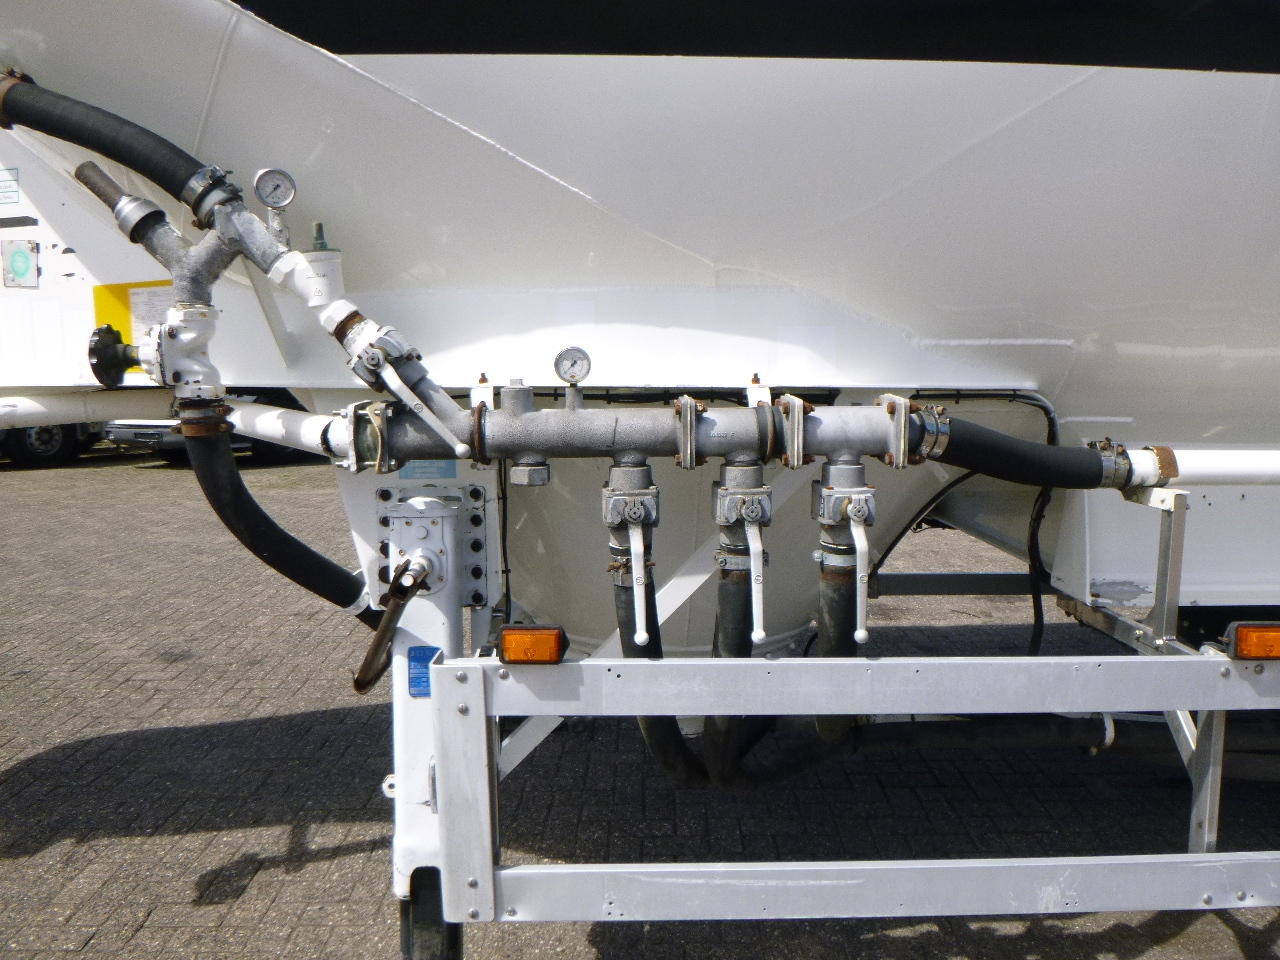 Semi-reboque cisterna para transporte de farinha Feldbinder Powder tank alu 40 m3 / 1 comp: foto 5